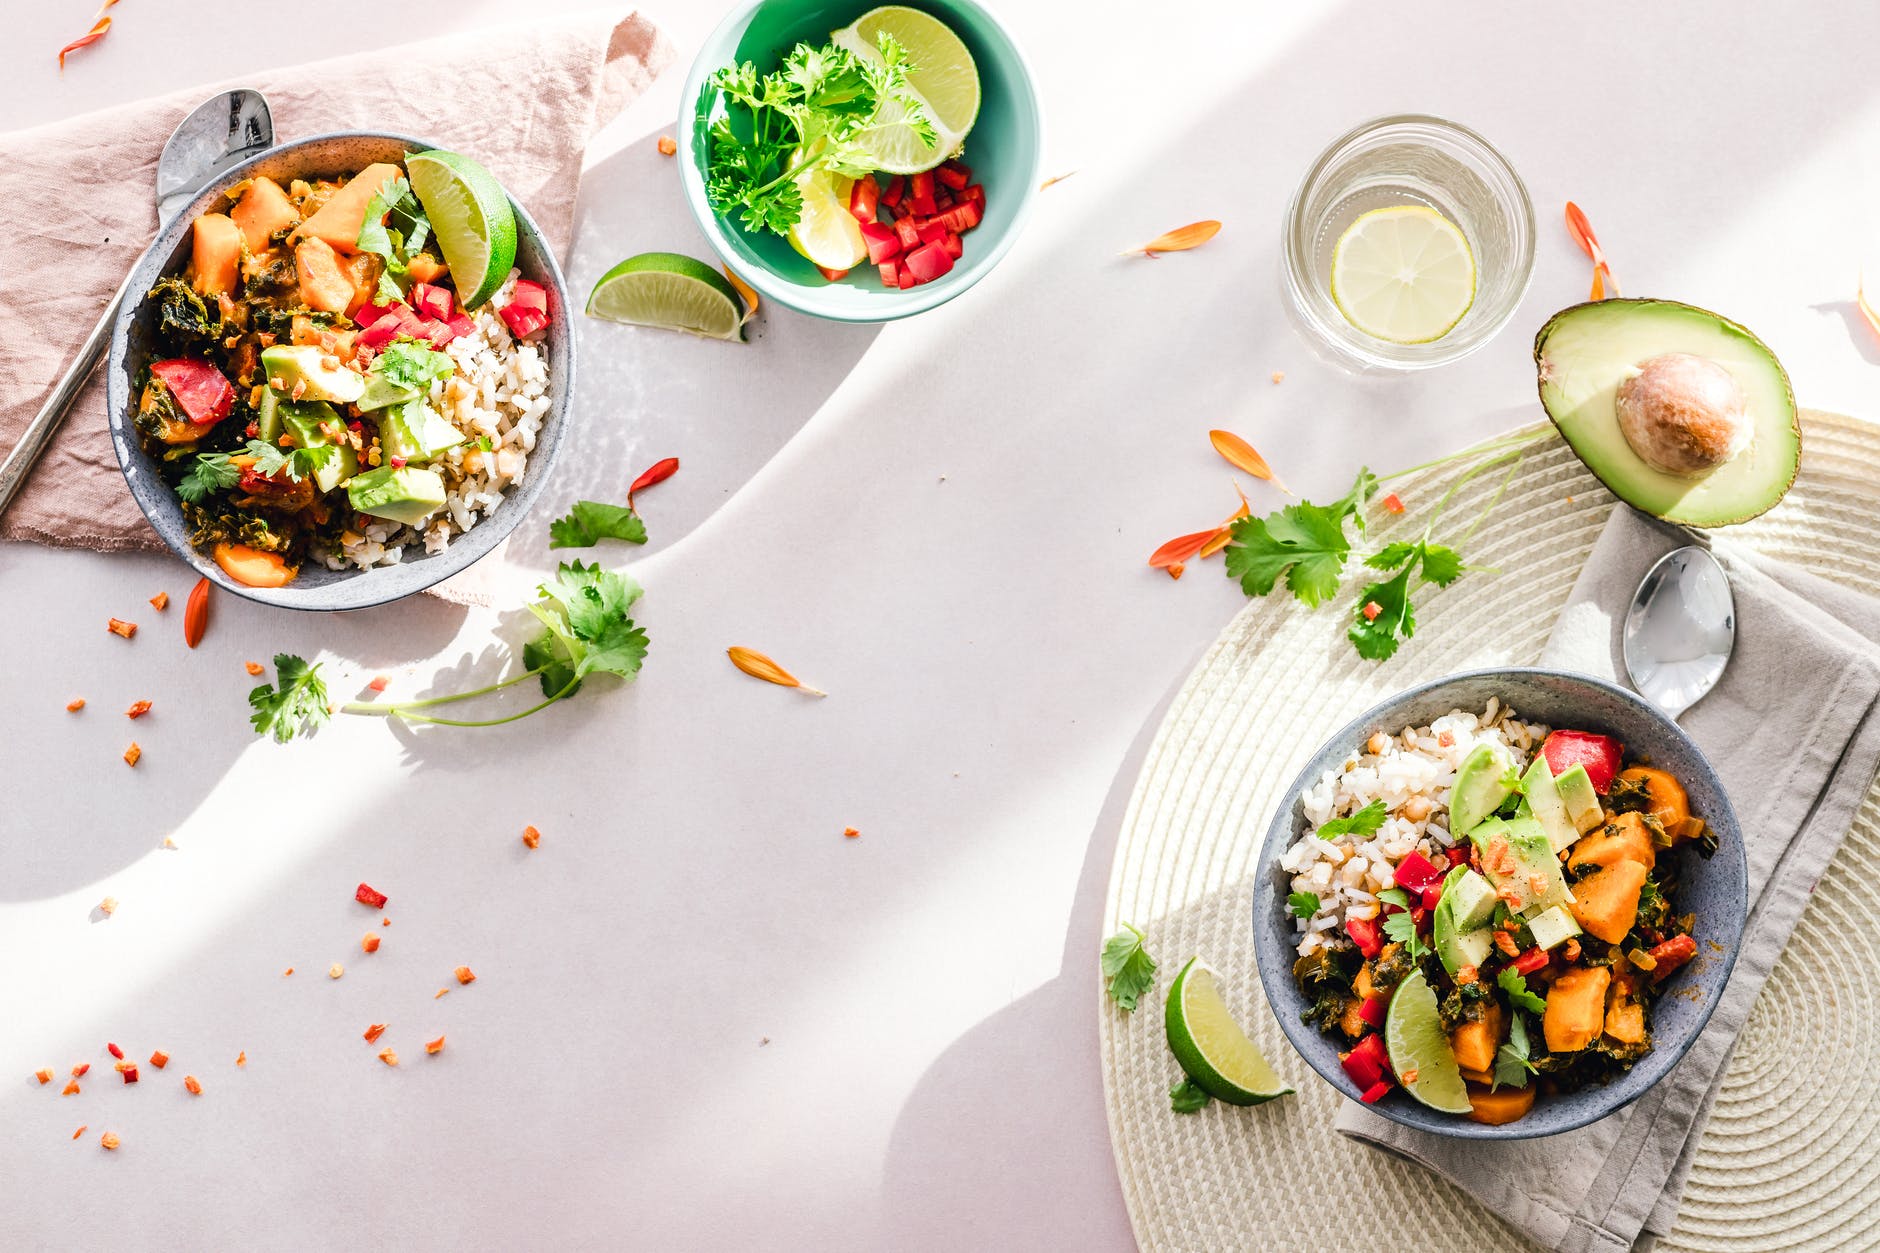 Tigelas com legumes, arroz e vegetais em mesa posta; copo com limão vista de cima